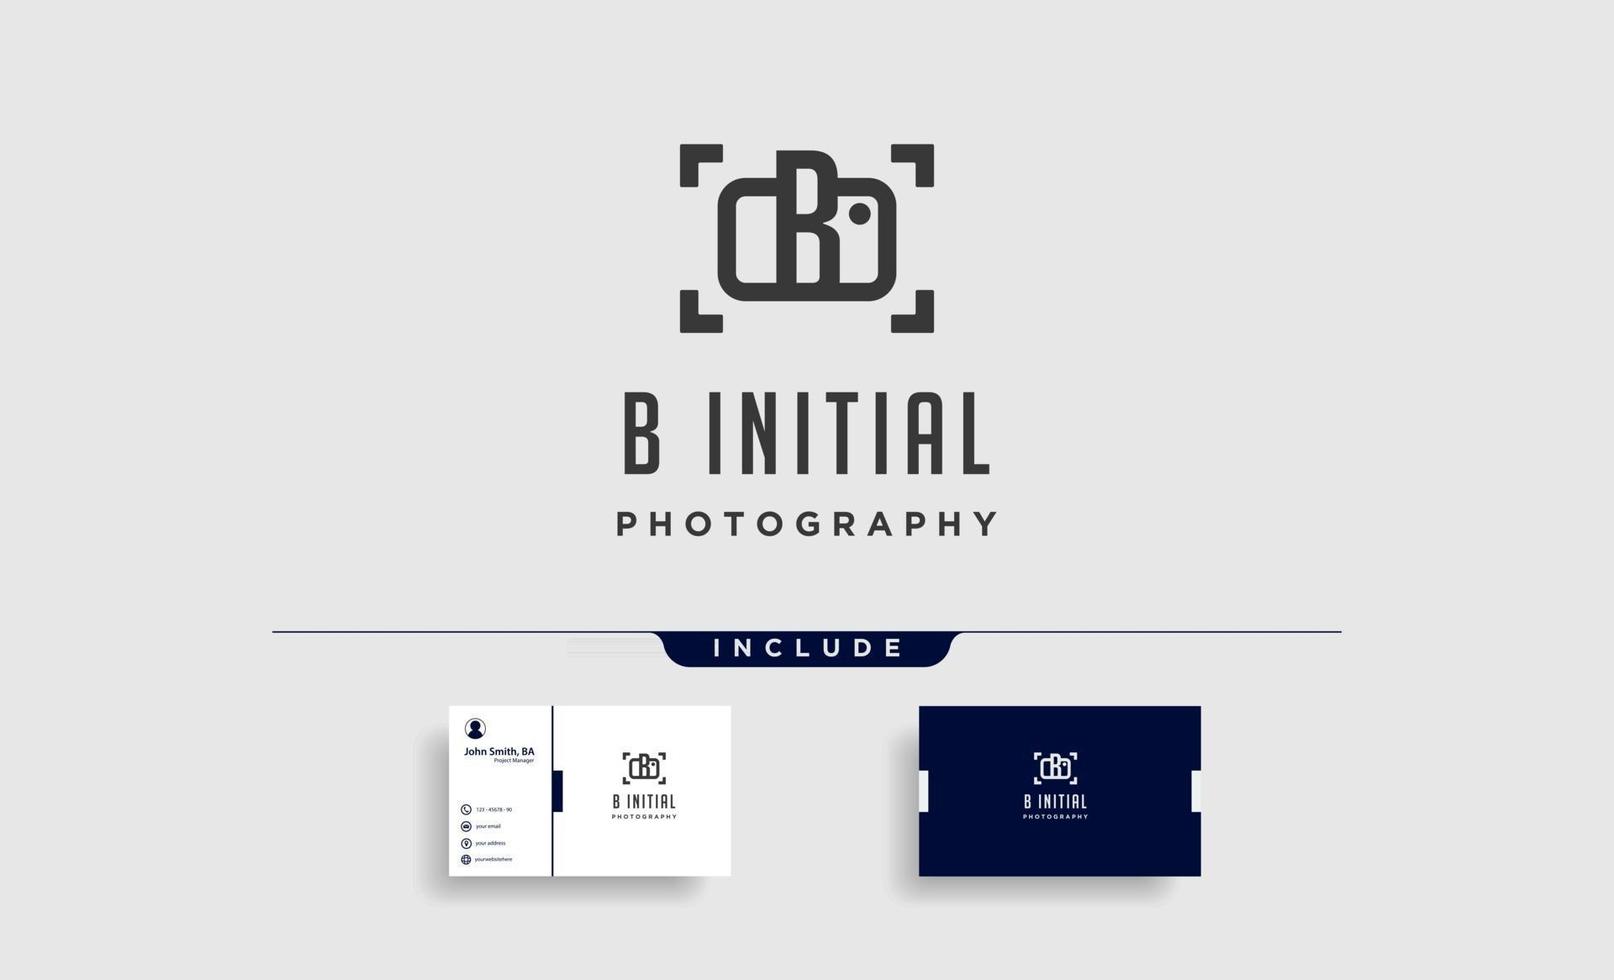 b elemento de ícone de design de vetor de modelo de logotipo de fotografia inicial